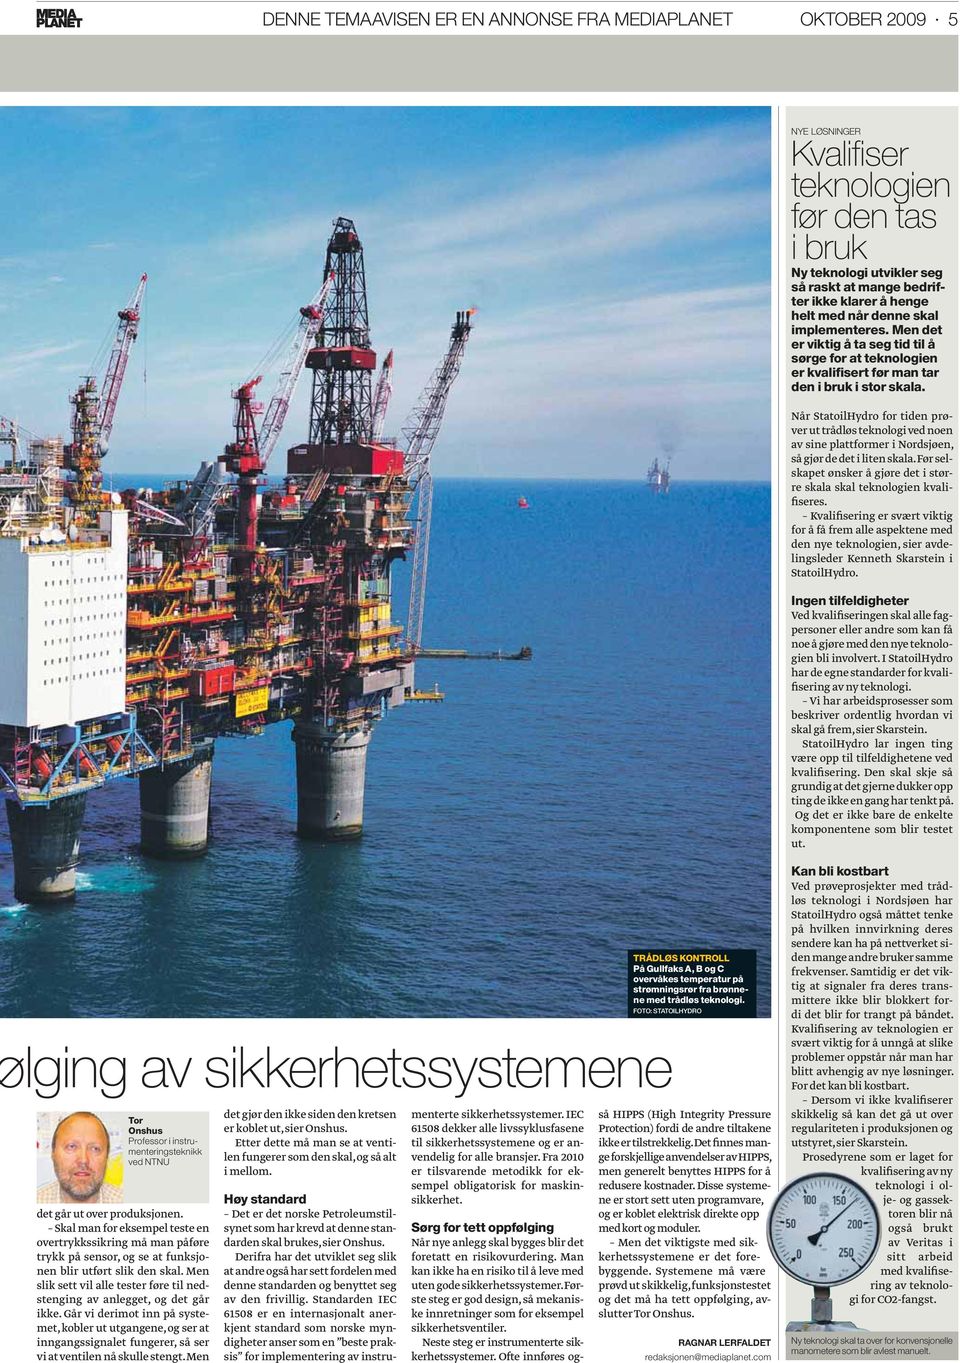 Når StatoilHydro for tiden prøver ut trådløs teknologi ved noen av sine plattformer i Nordsjøen, så gjør de det i liten skala.